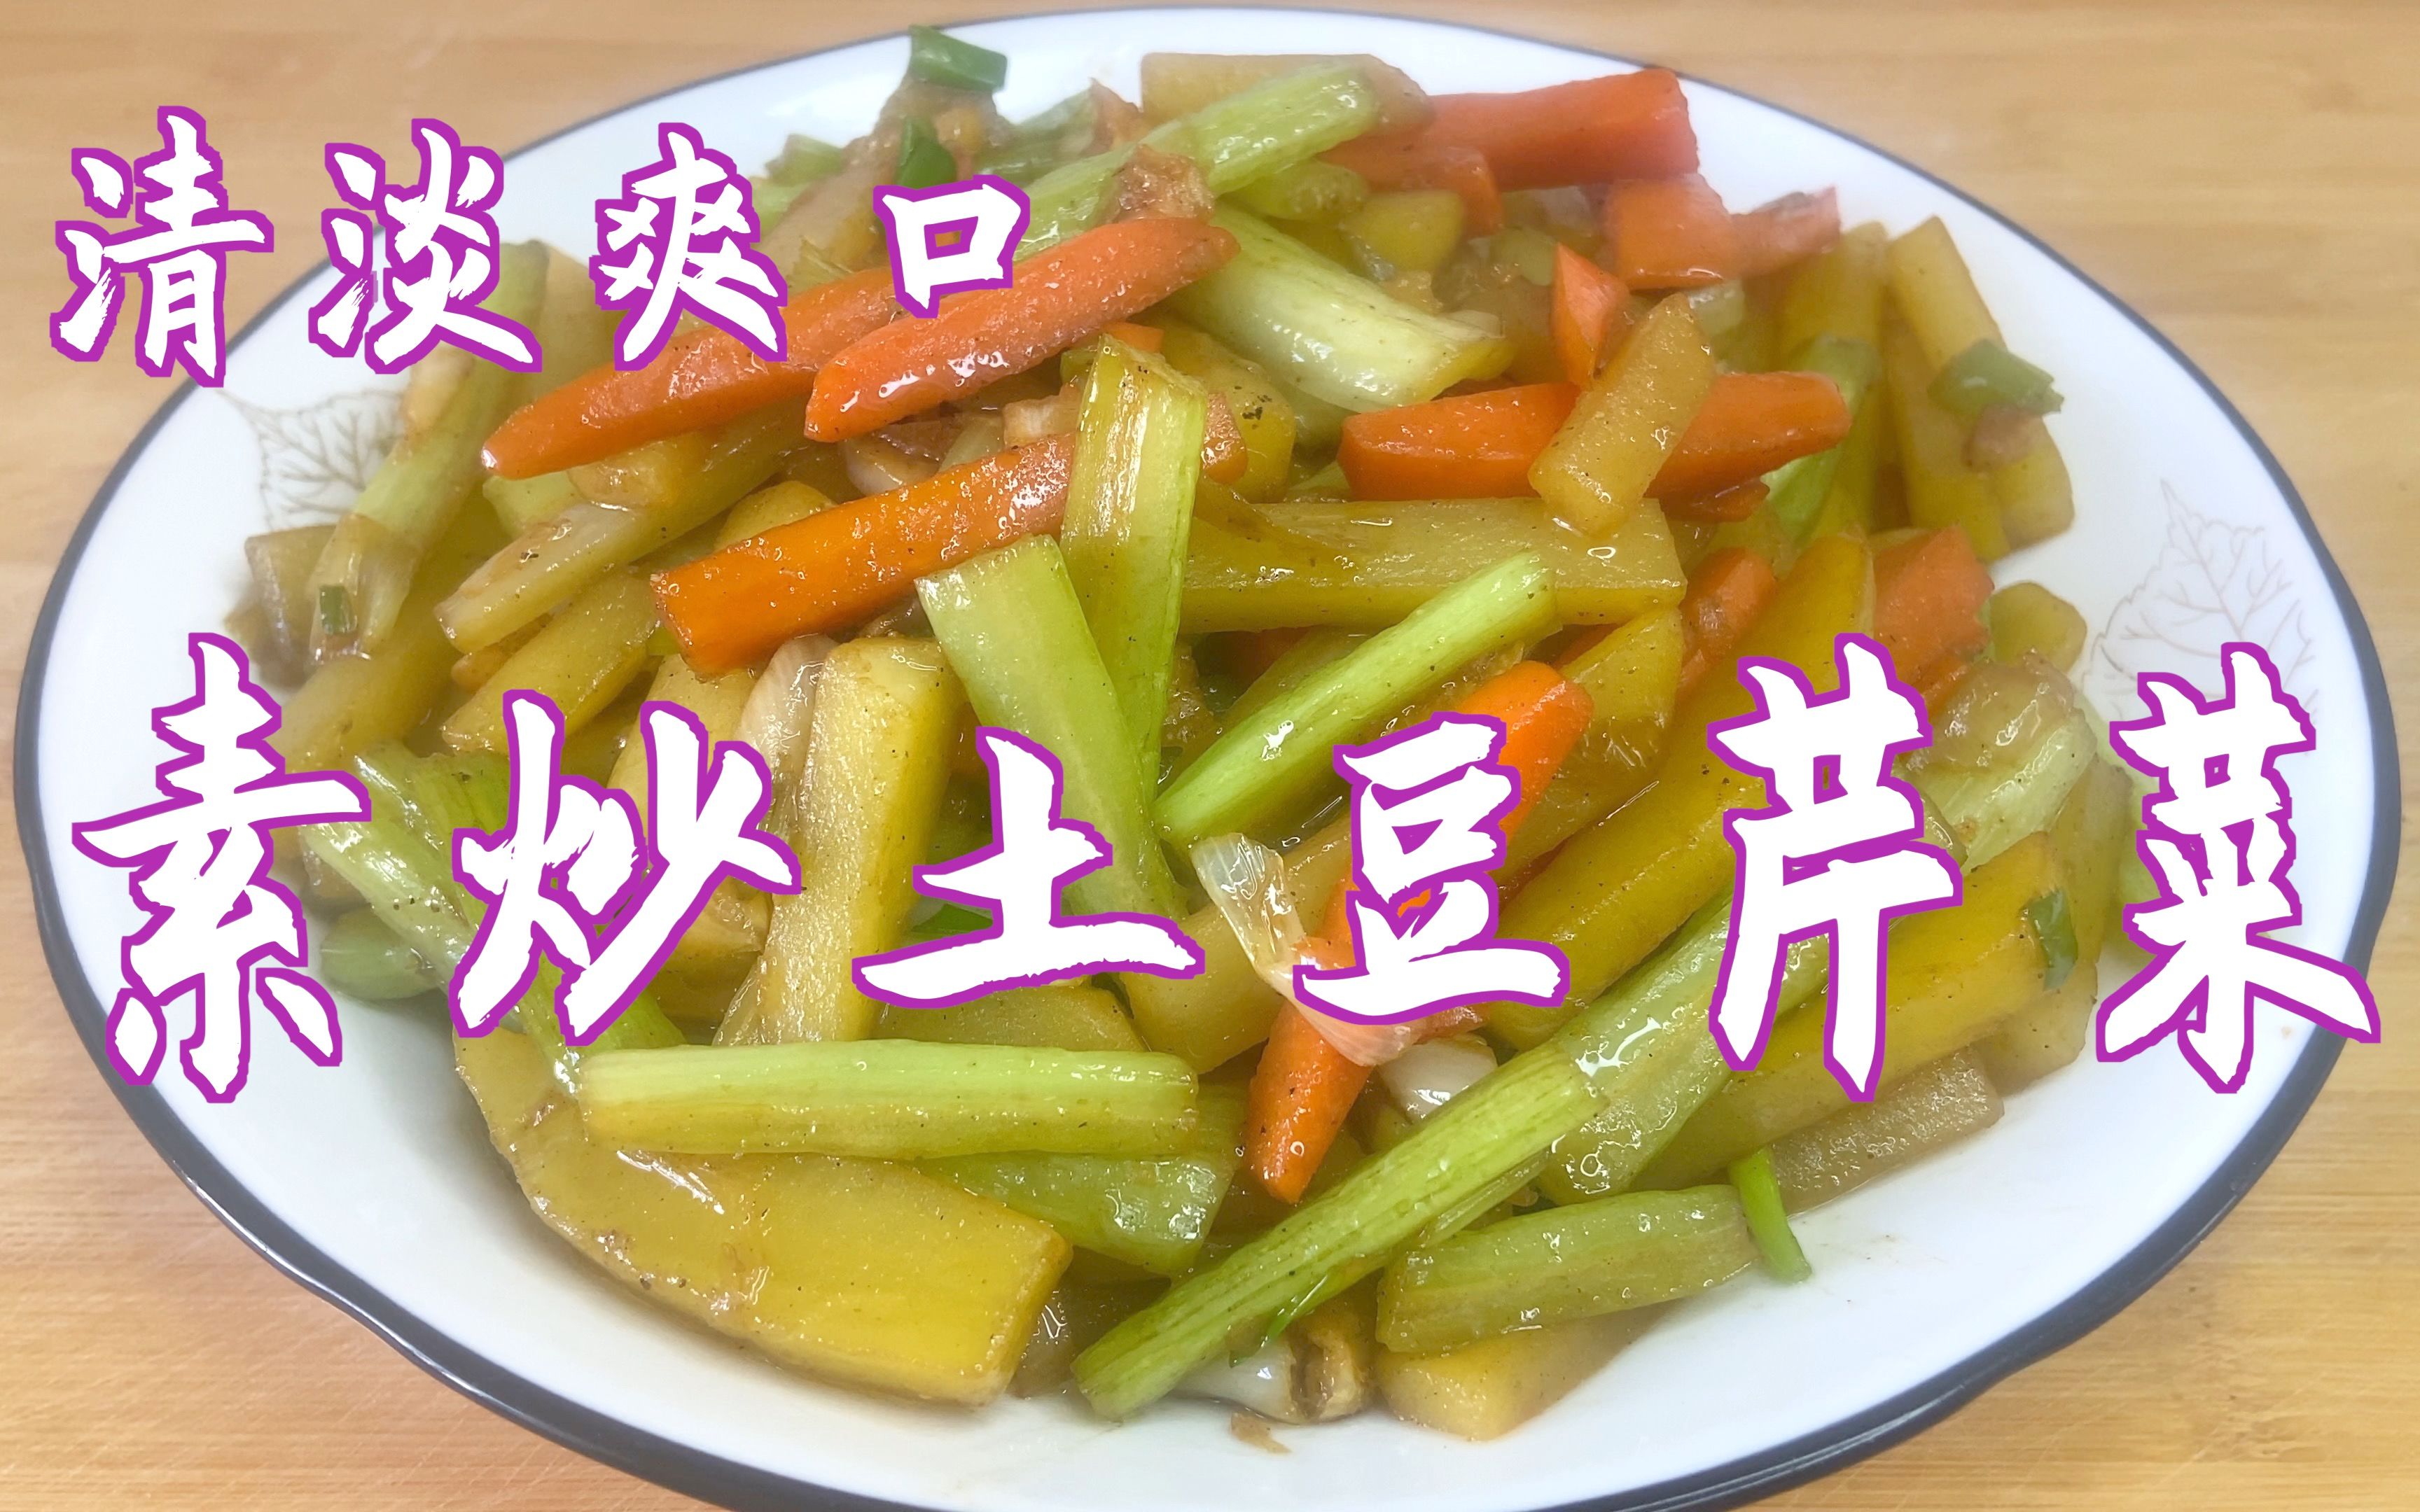 芹菜炒油豆腐,芹菜炒油豆腐的家常做法 - 美食杰芹菜炒油豆腐做法大全